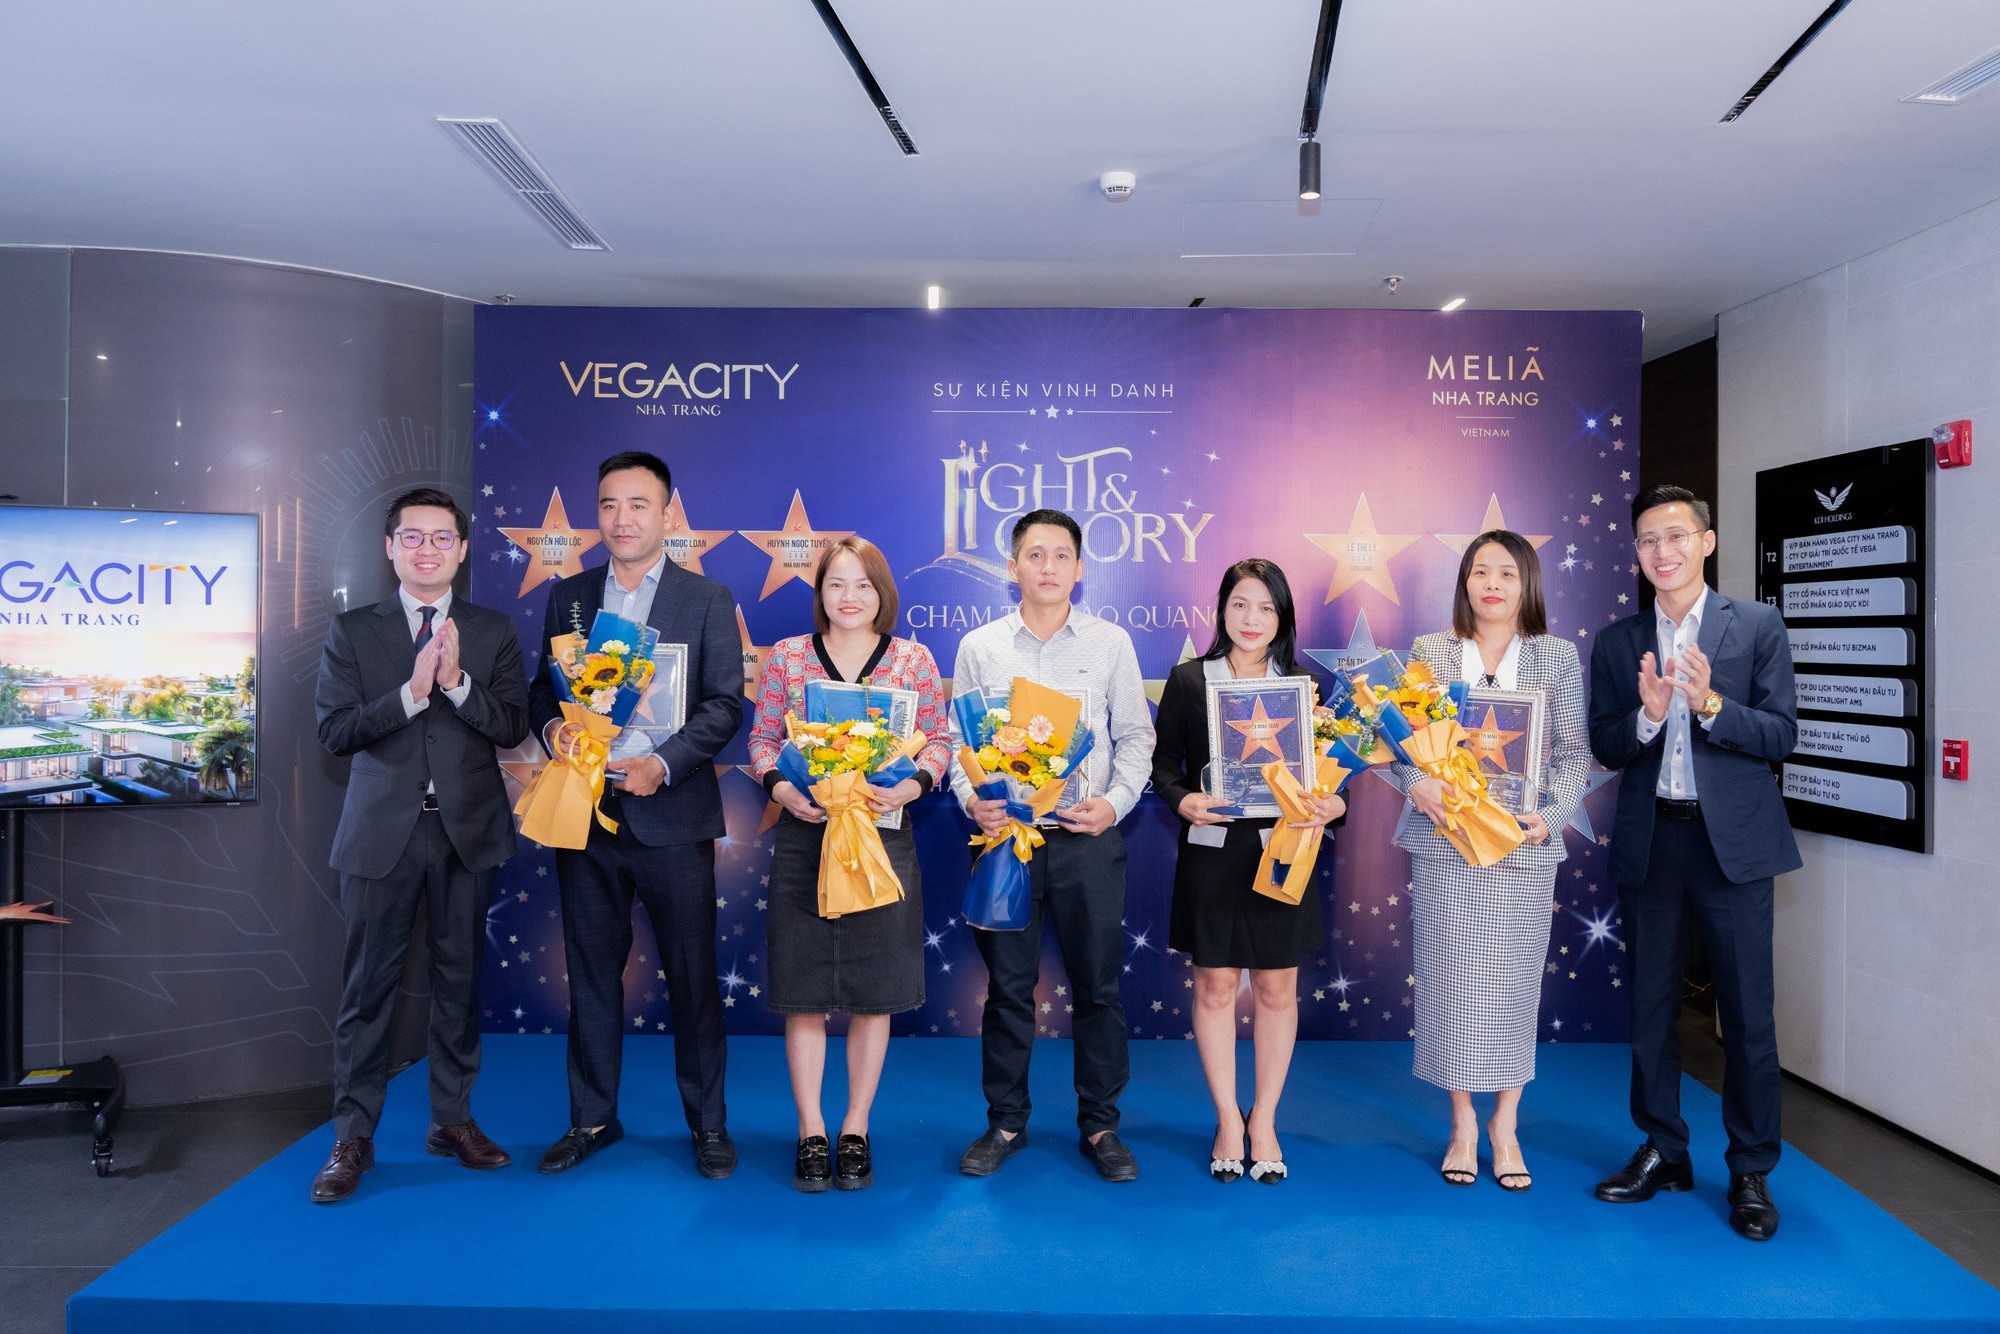 Gần 1 tỷ đồng tiền thưởng dành cho đại lý lập kỷ lục doanh số bán hàng Vega City Nha Trang - Ảnh 1.